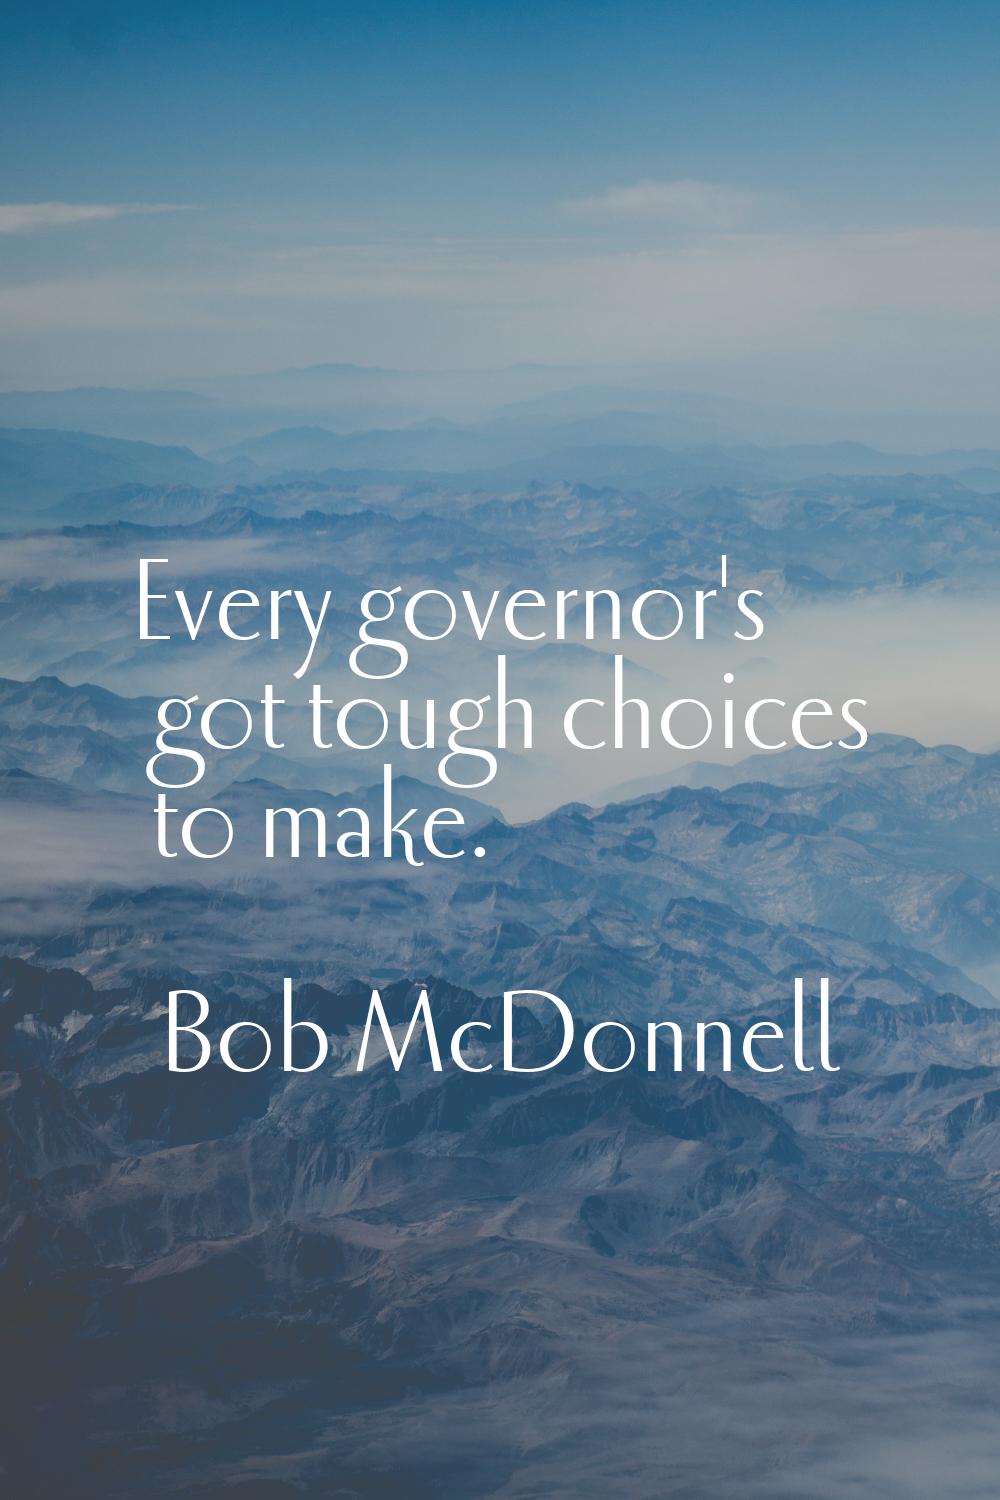 Every governor's got tough choices to make.